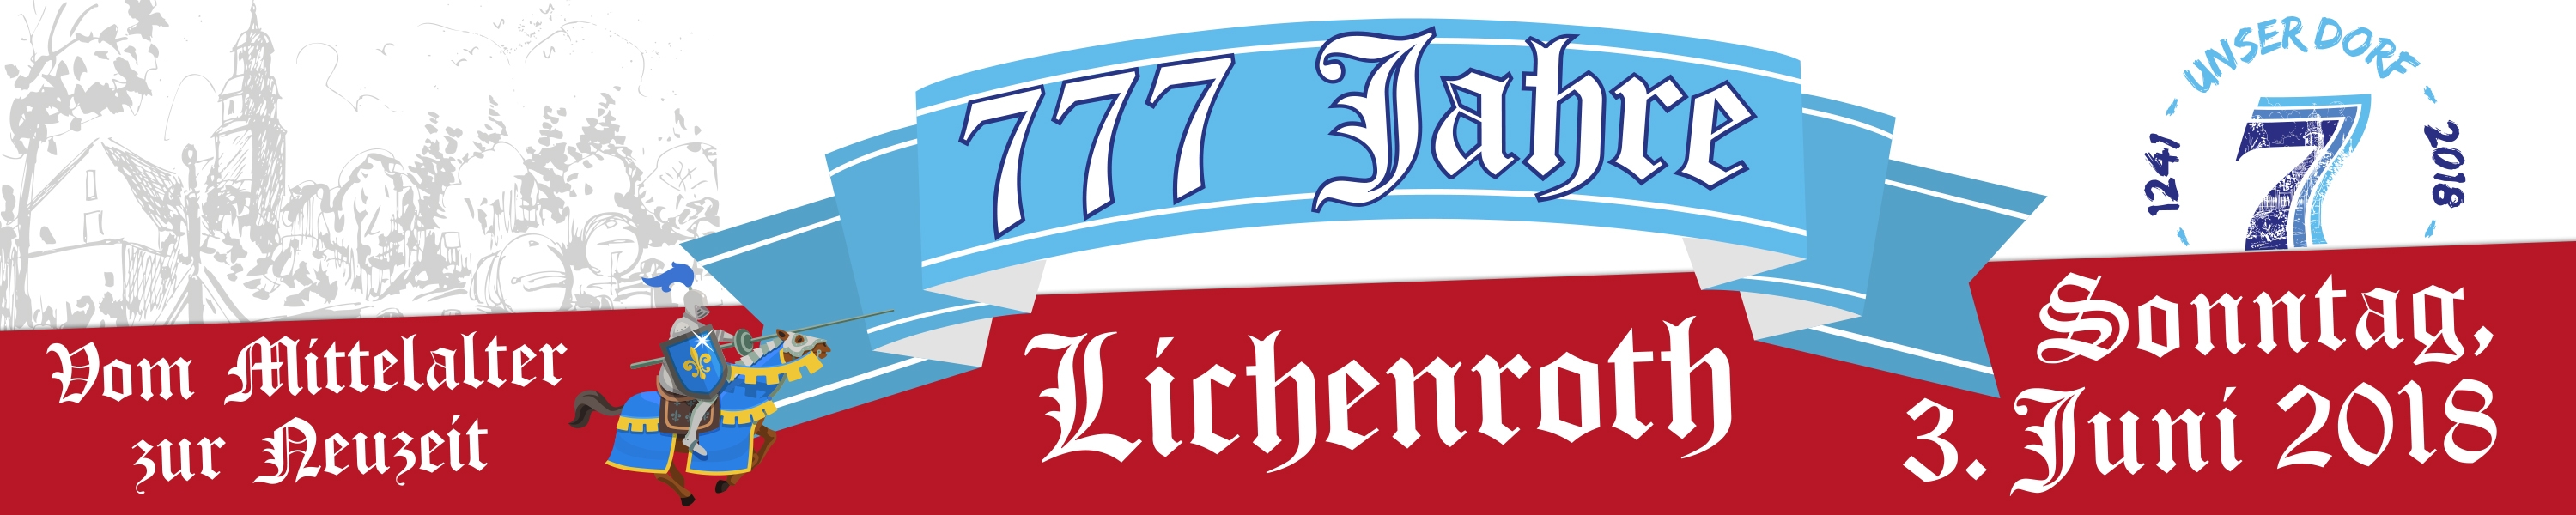 Dorfjubiläum 777 Jahre Lichenroth